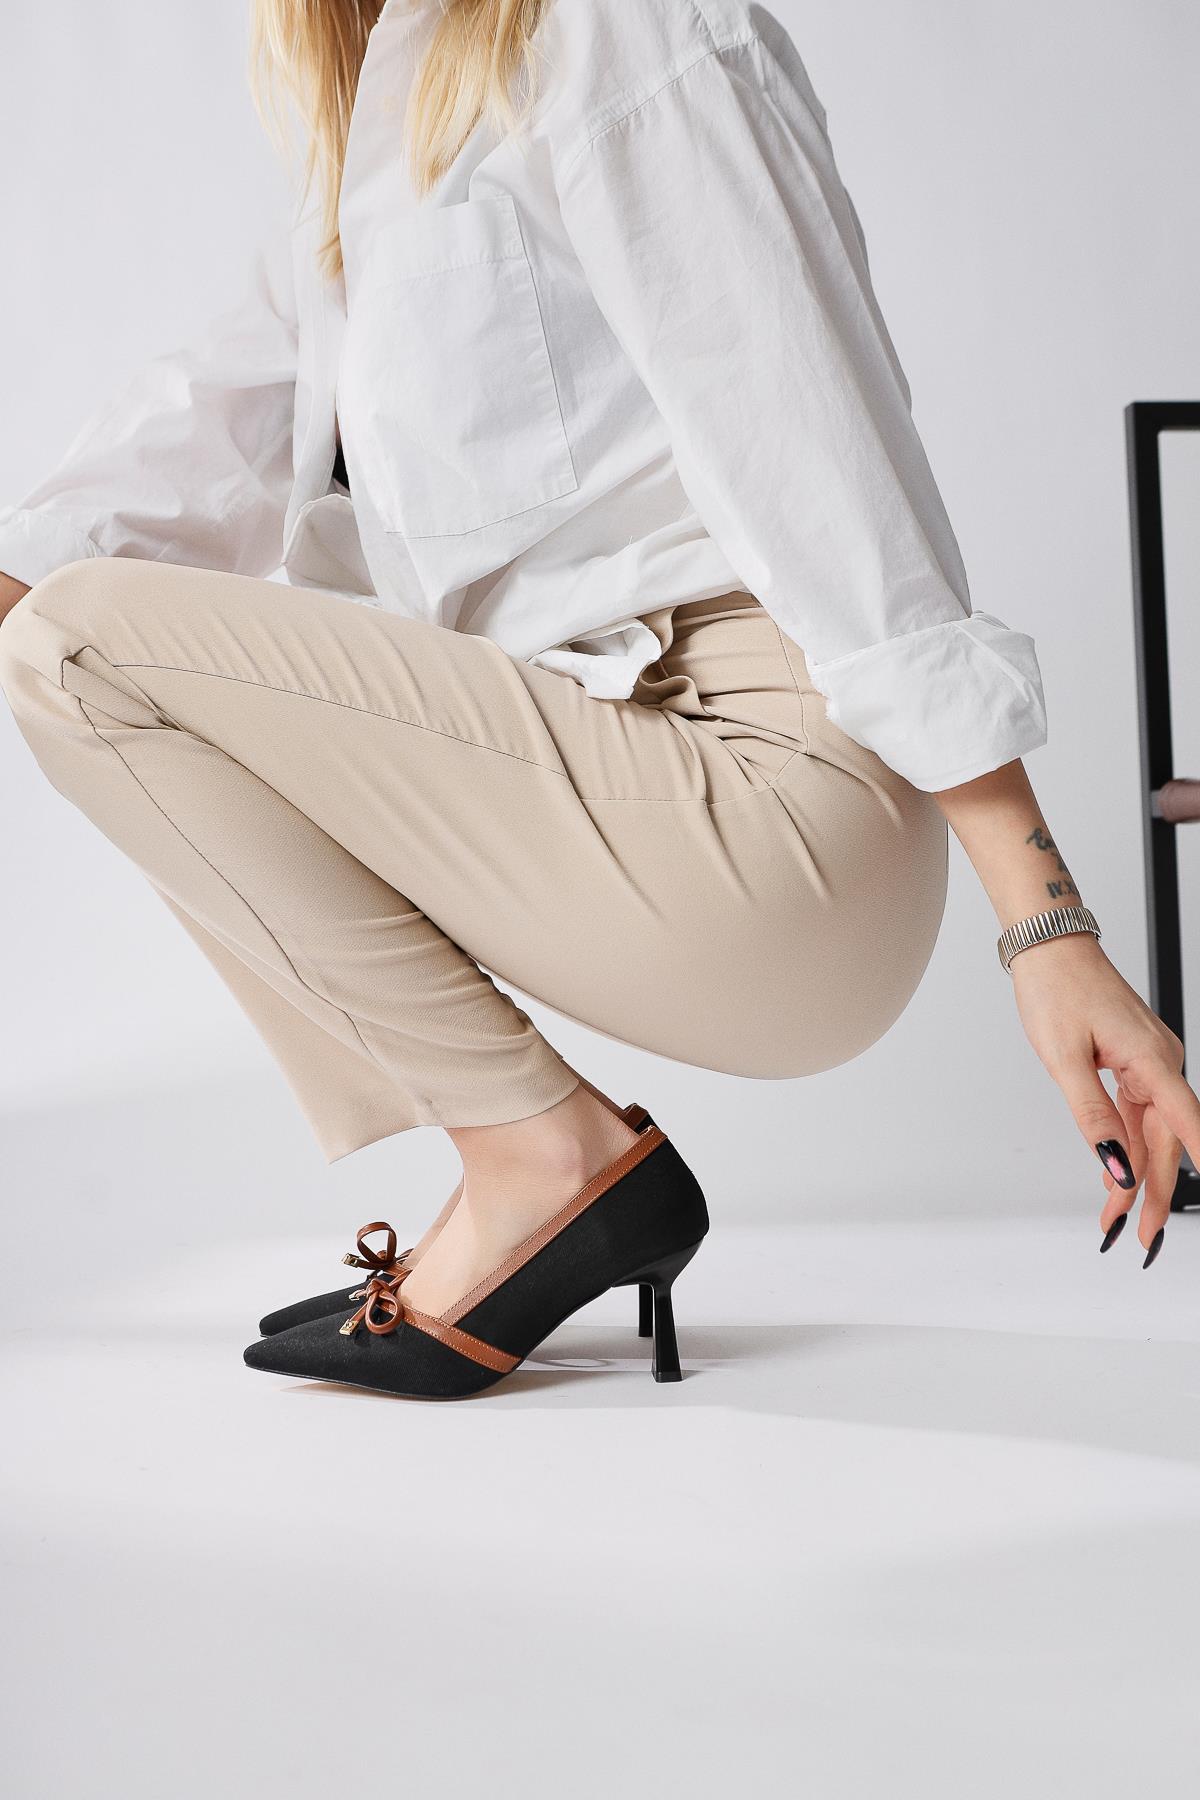 Loviisa Siyah-Kahve Fiyonk Detaylı Topuklu Ayakkabı | Limoya.com ile Modayı  Keşfet!